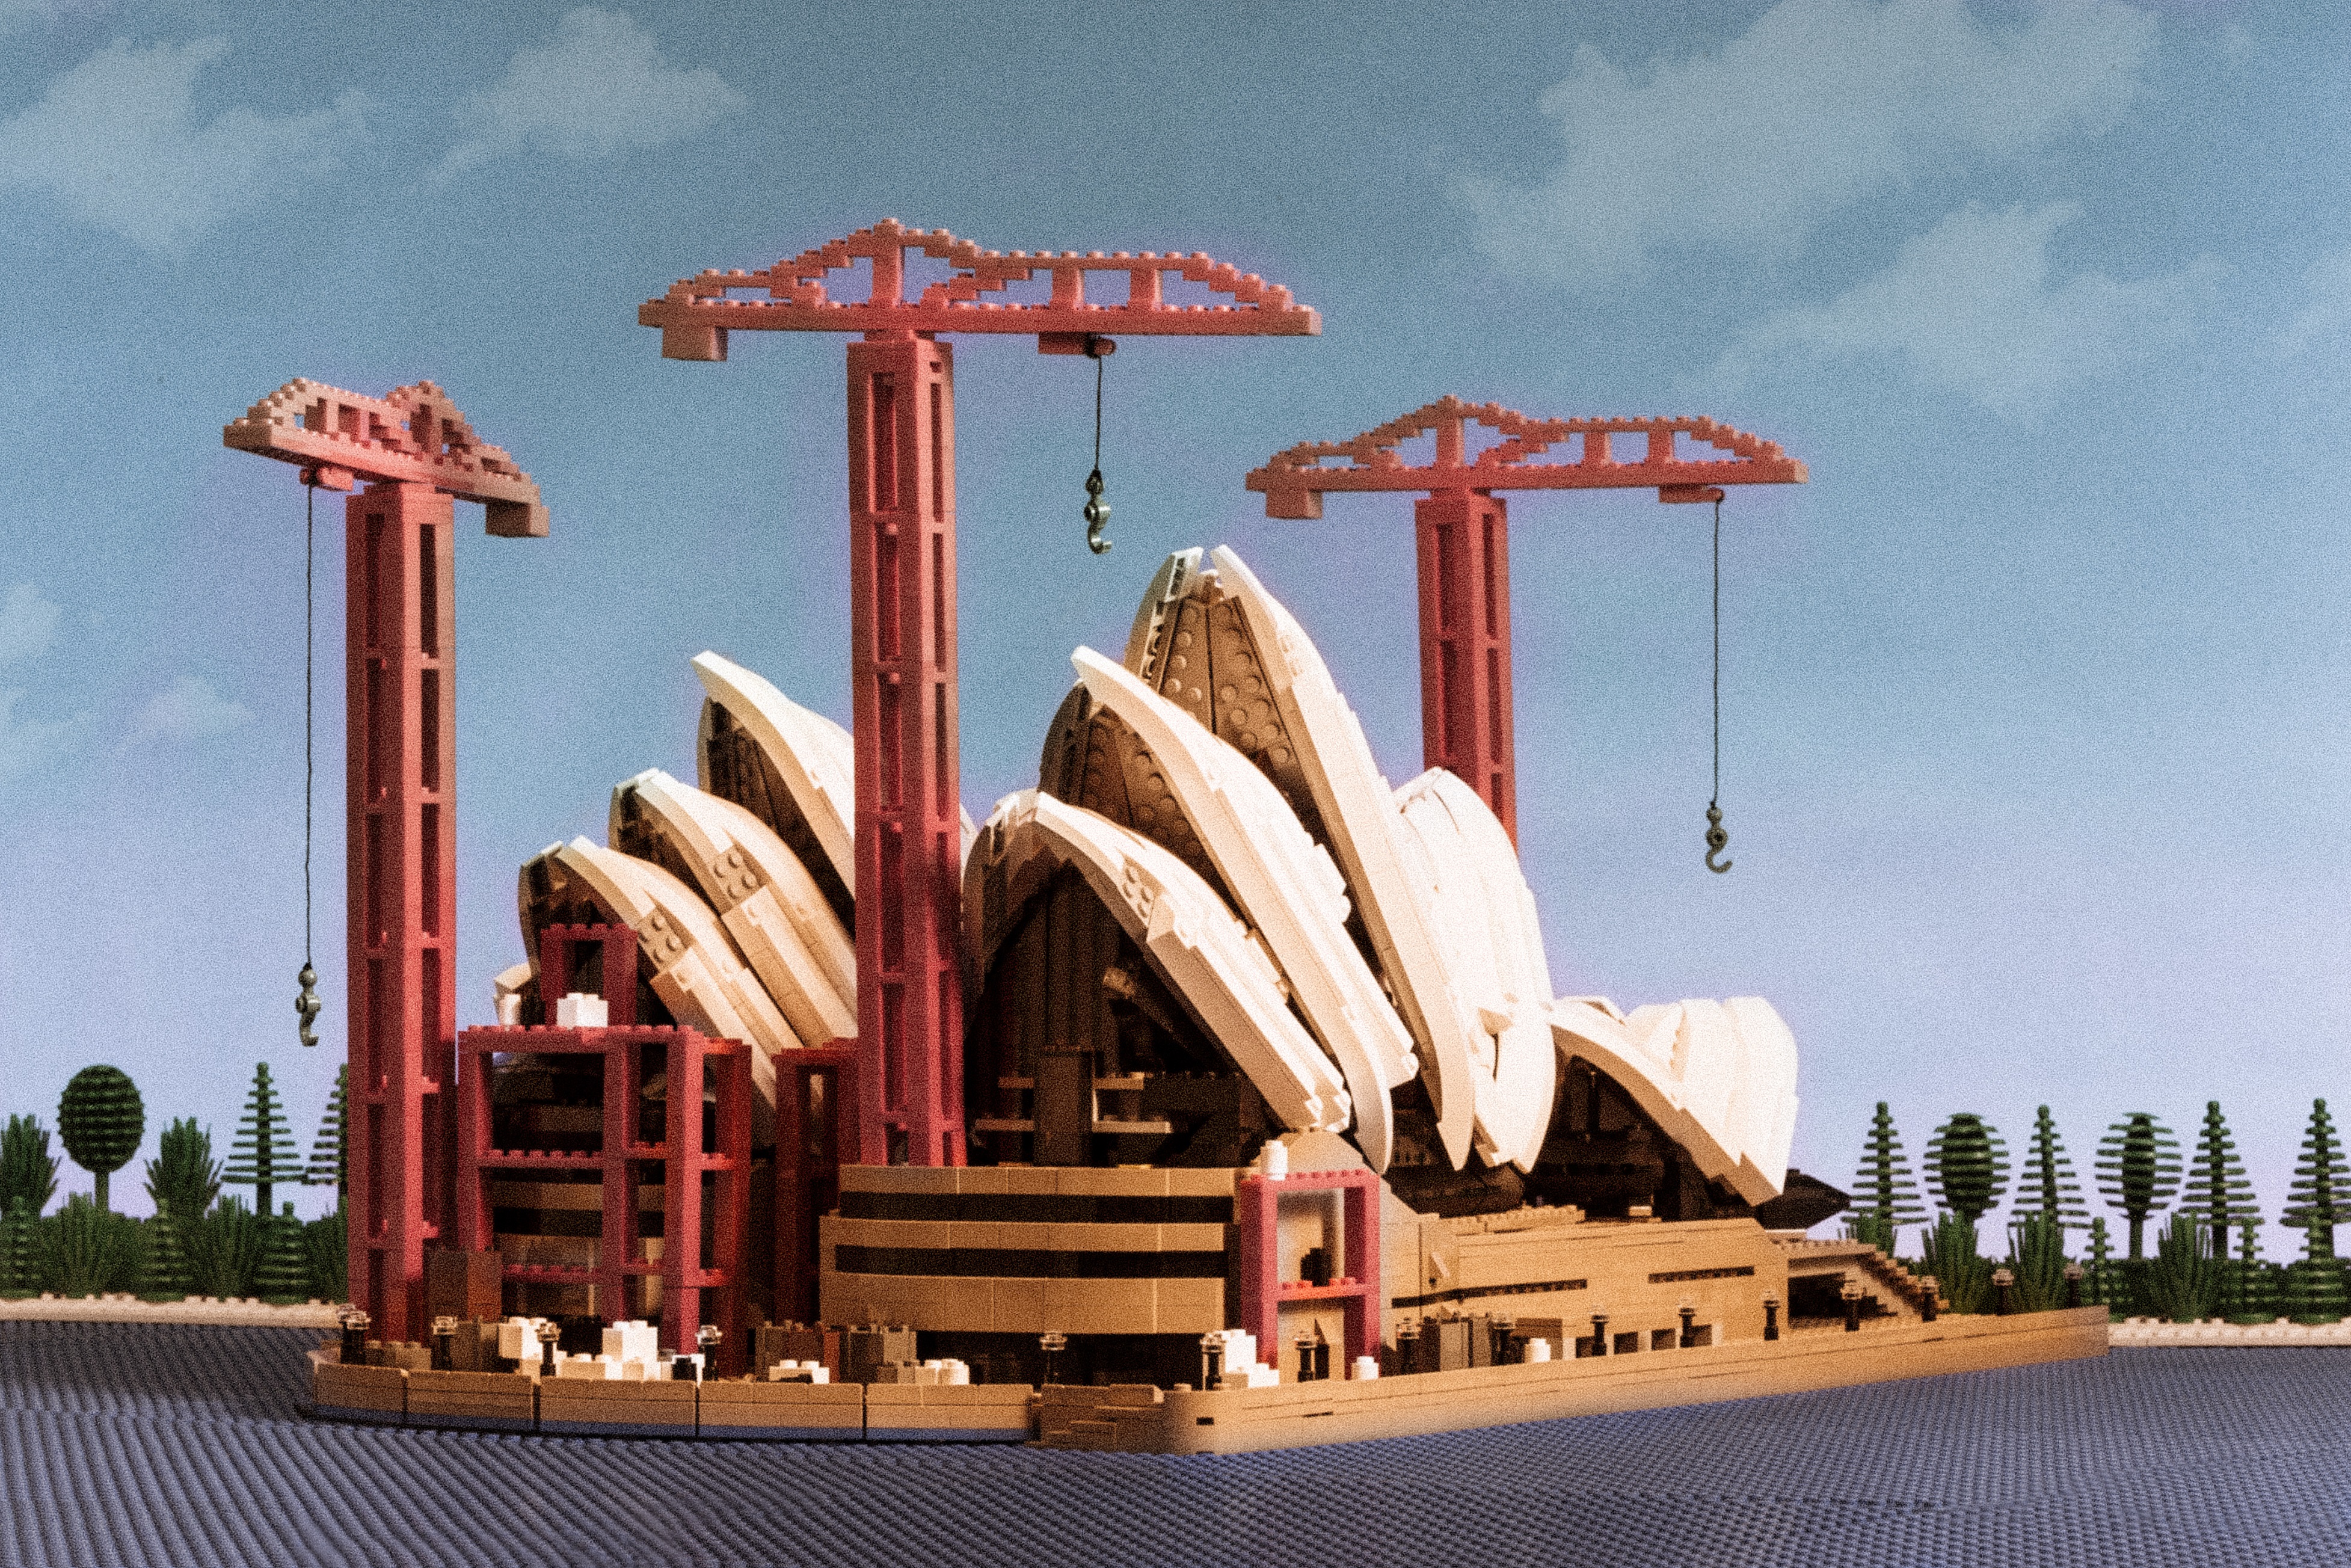 Iconic Shots Of The Lego Sydney Opera House